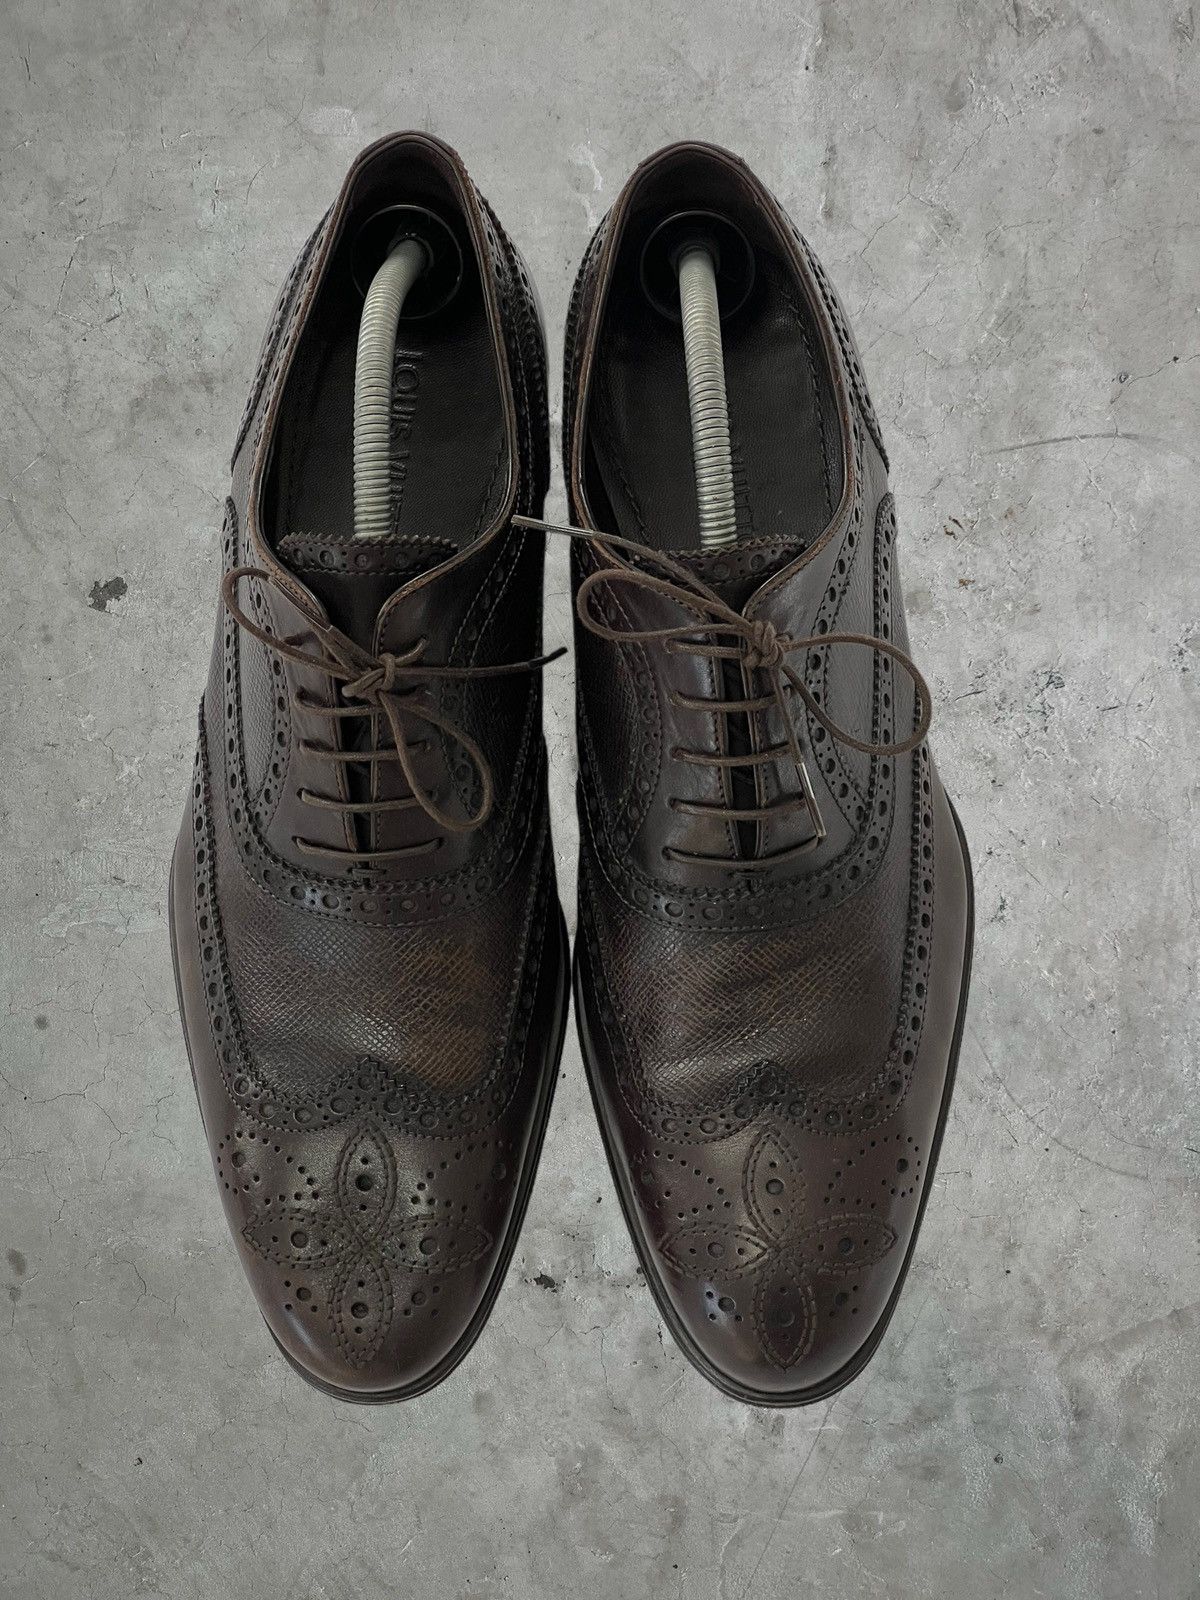 Louis Vuitton Louis Vuitton Detailed Leather Shoes Size US 10 / EU 43 - 3 Thumbnail